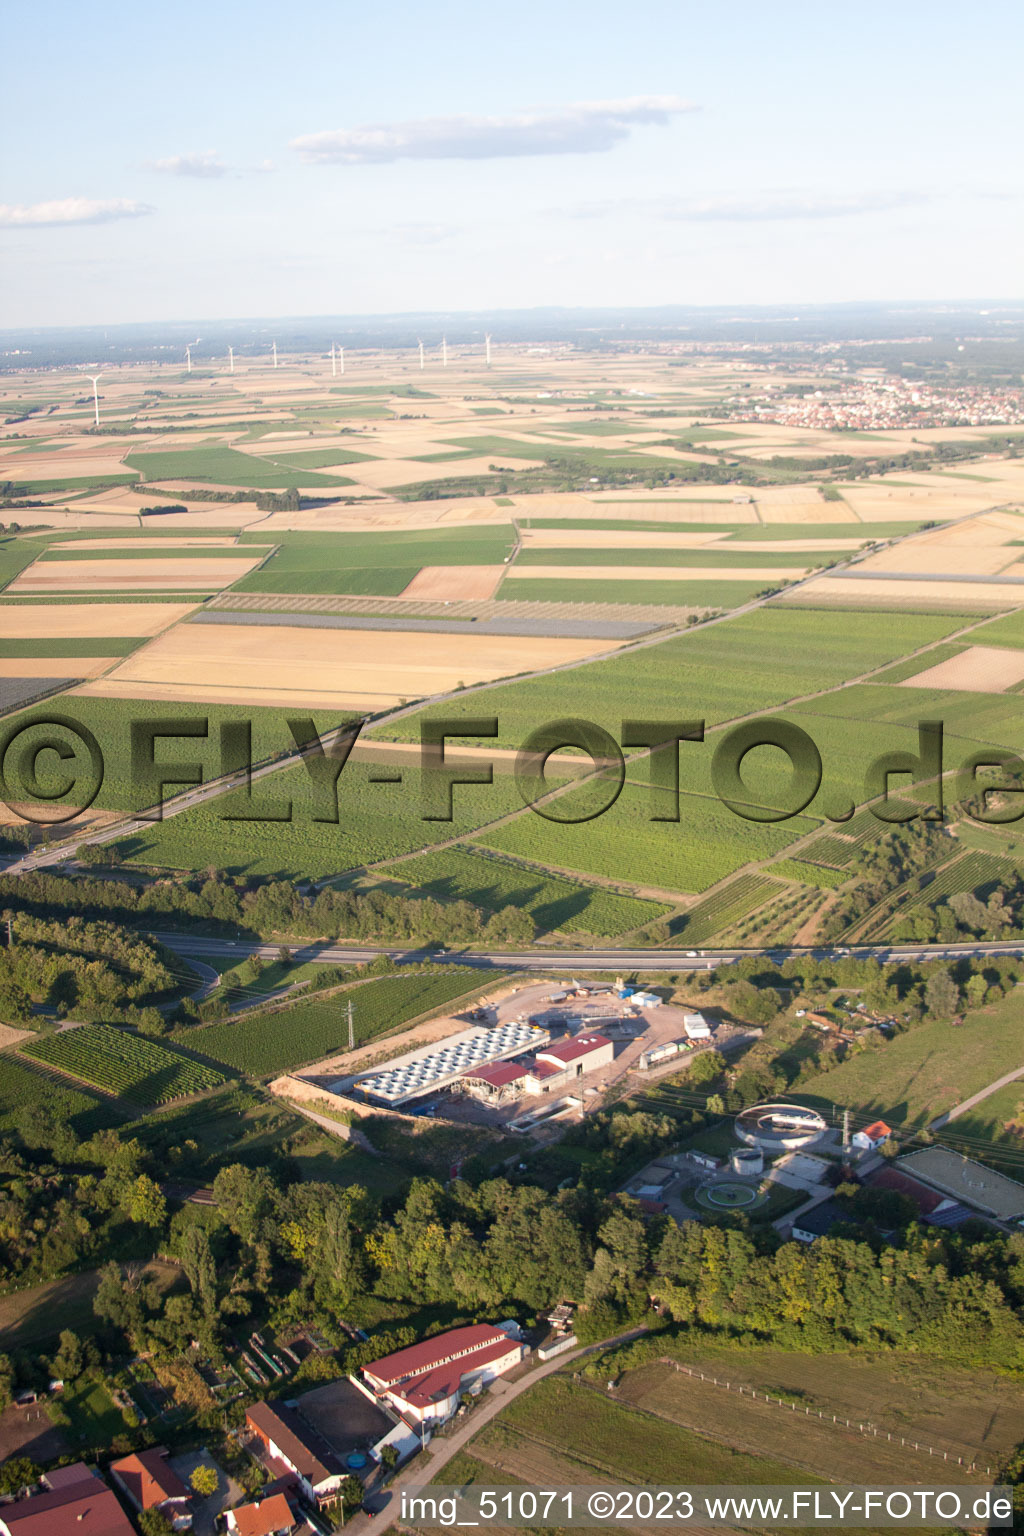 Luftbild von Geothermieanlage der Pfalzwerke geofuture GmbH bei Insheim an der A65 im Bundesland Rheinland-Pfalz, Deutschland